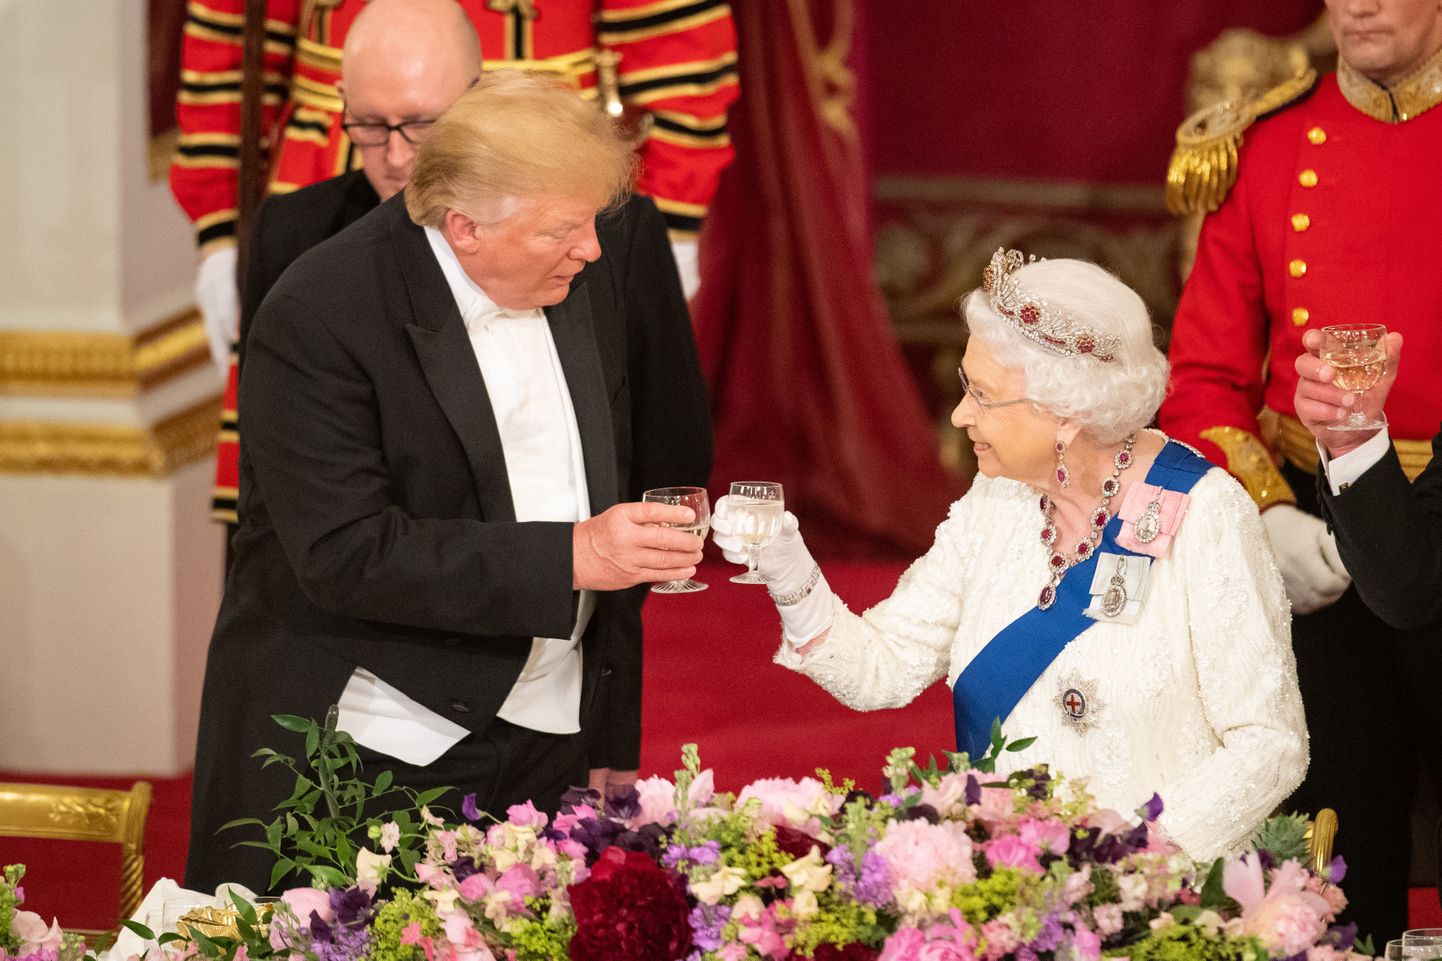 Briti kuninganna Elizabeth II löömas 3. juunil 2019 Buckinghami palees klaasi kokku USA presidendi Donald Trumpiga